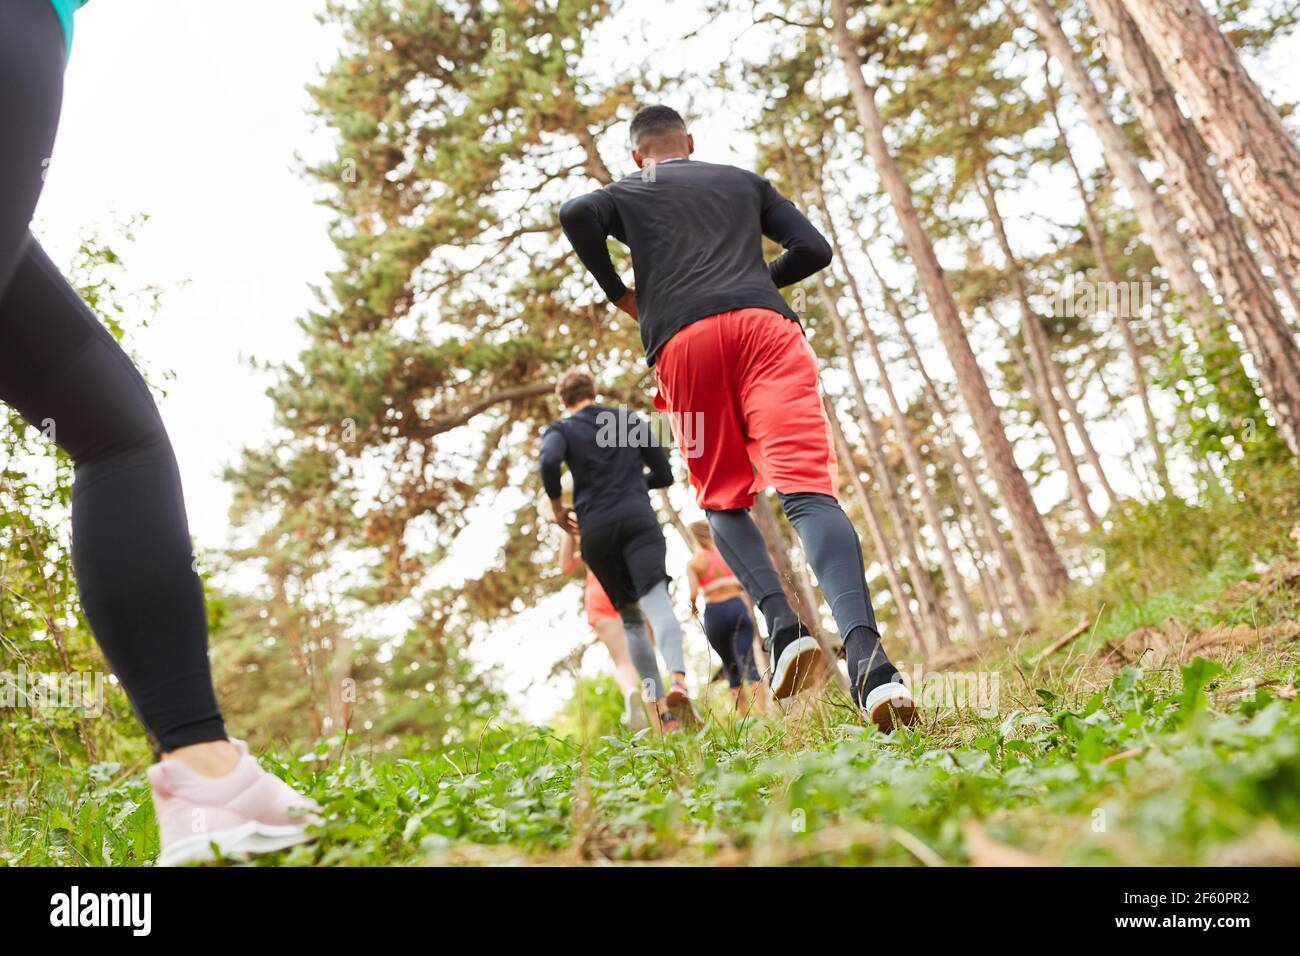 Junge Menschen tun Cross-Country oder Cross-Country-Läufe in der Natur für Fitness und Ausdauer Stockfoto